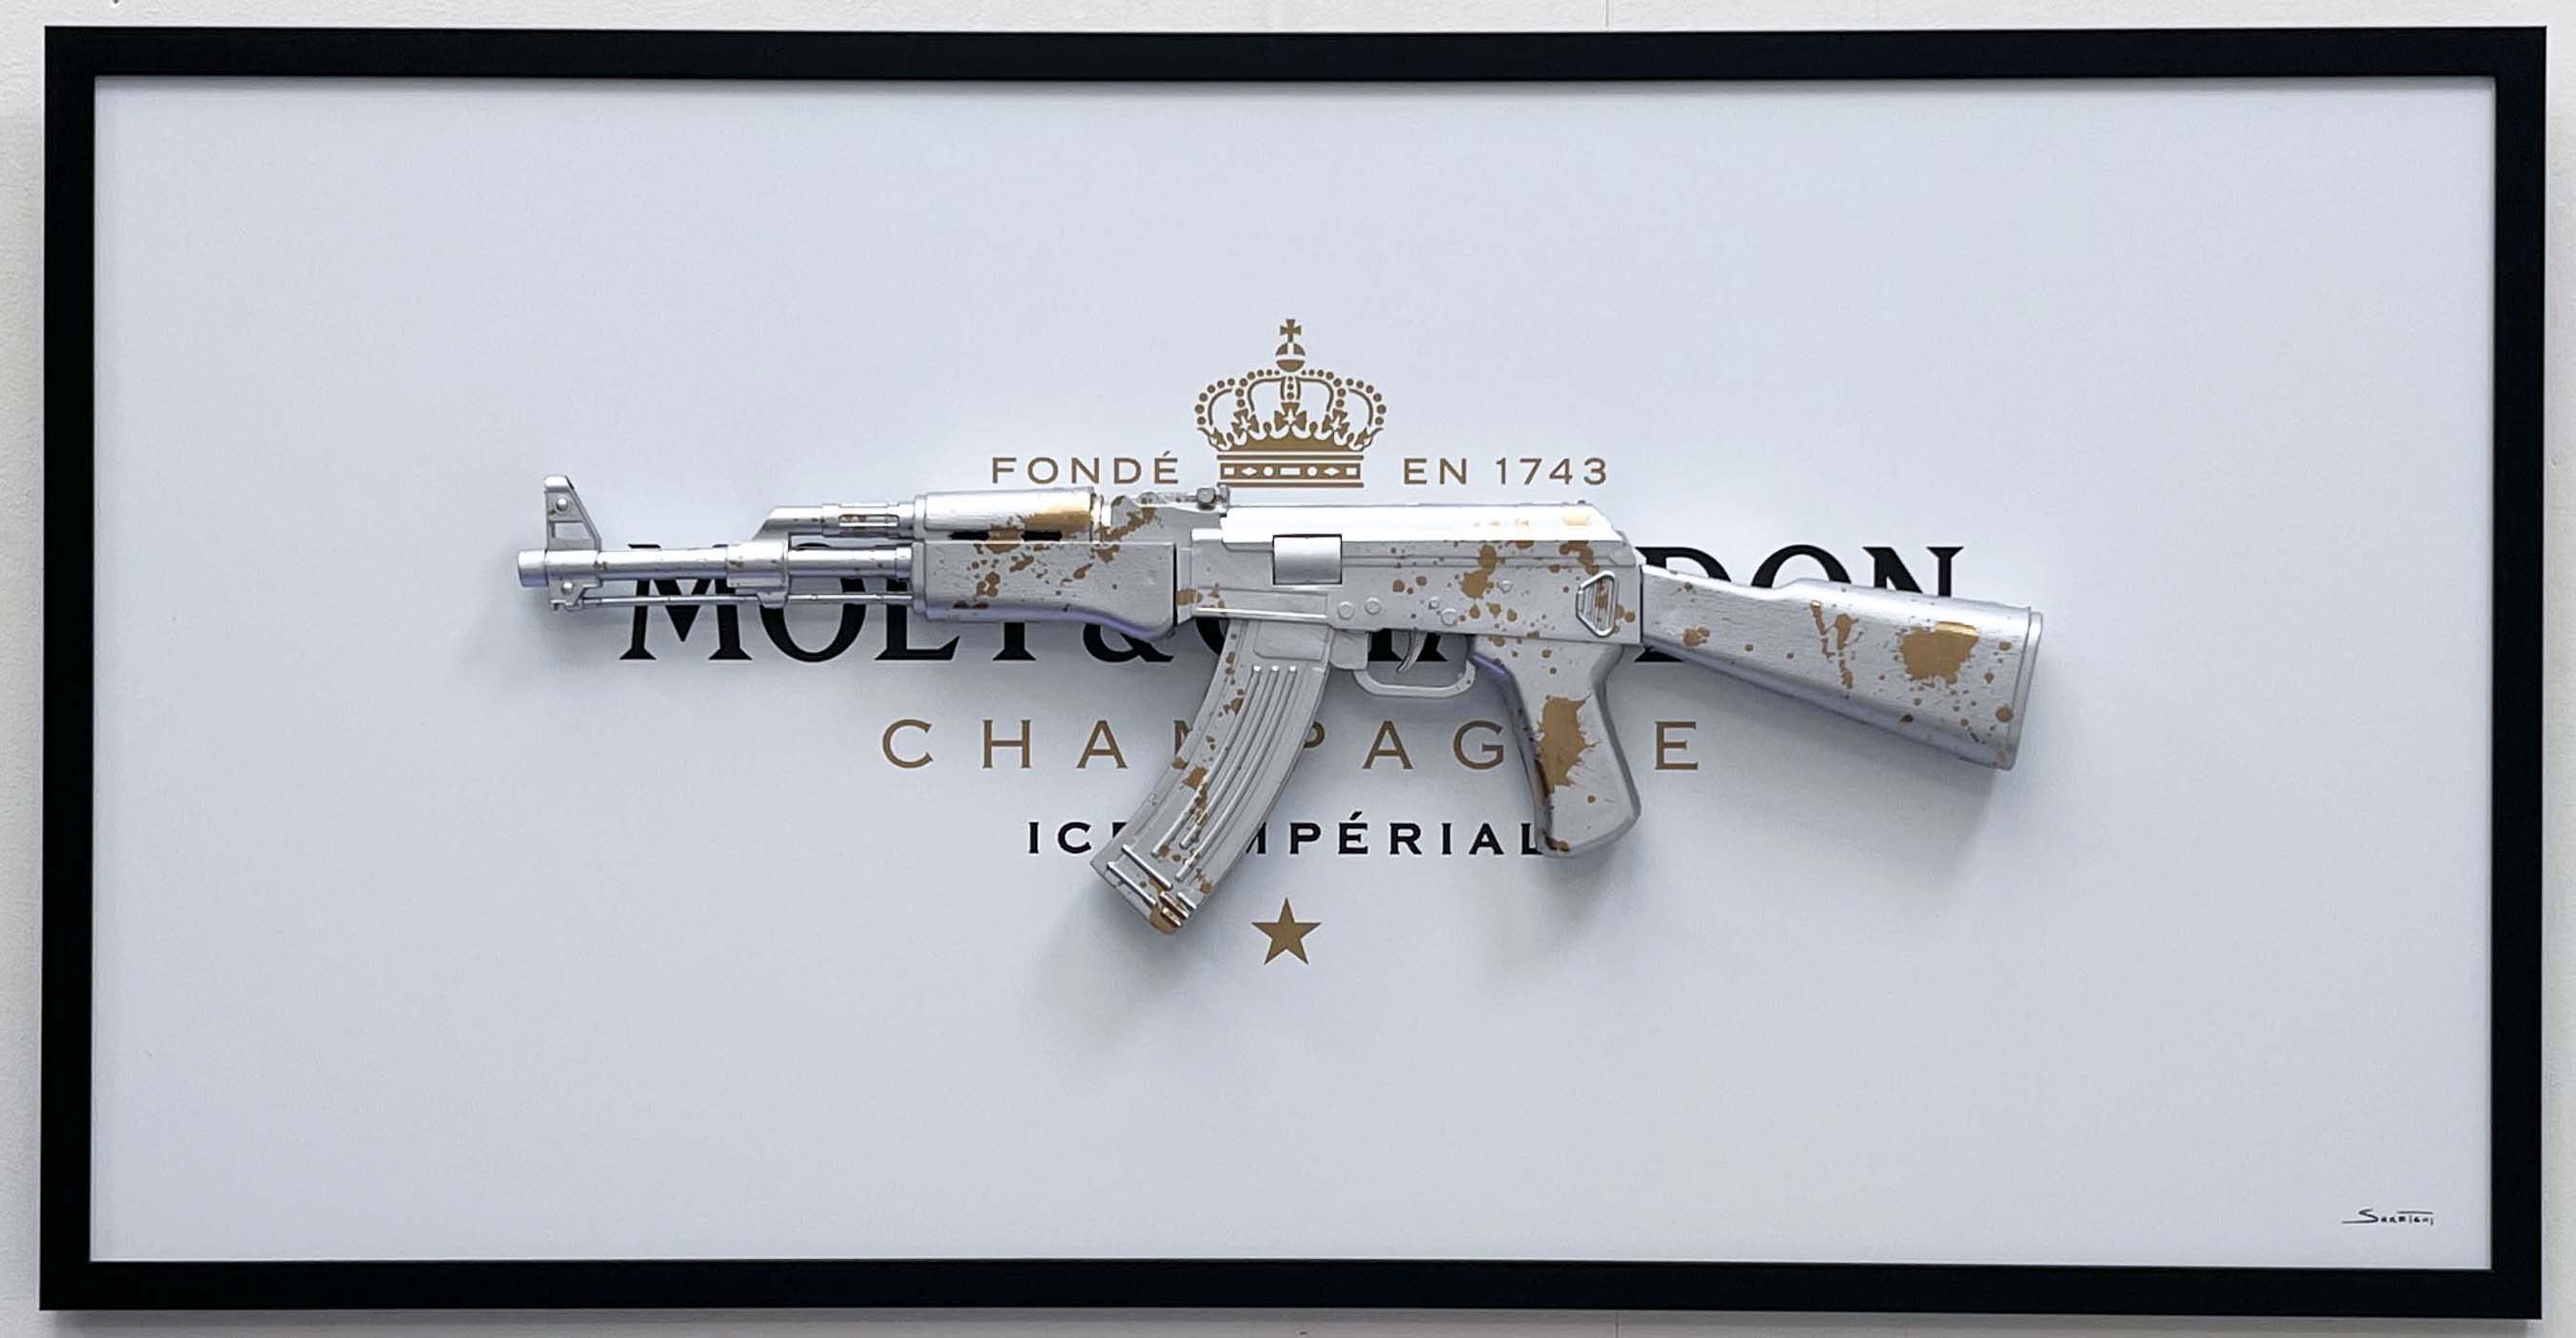 AK-47 pop art- Explore our motivational art collection!